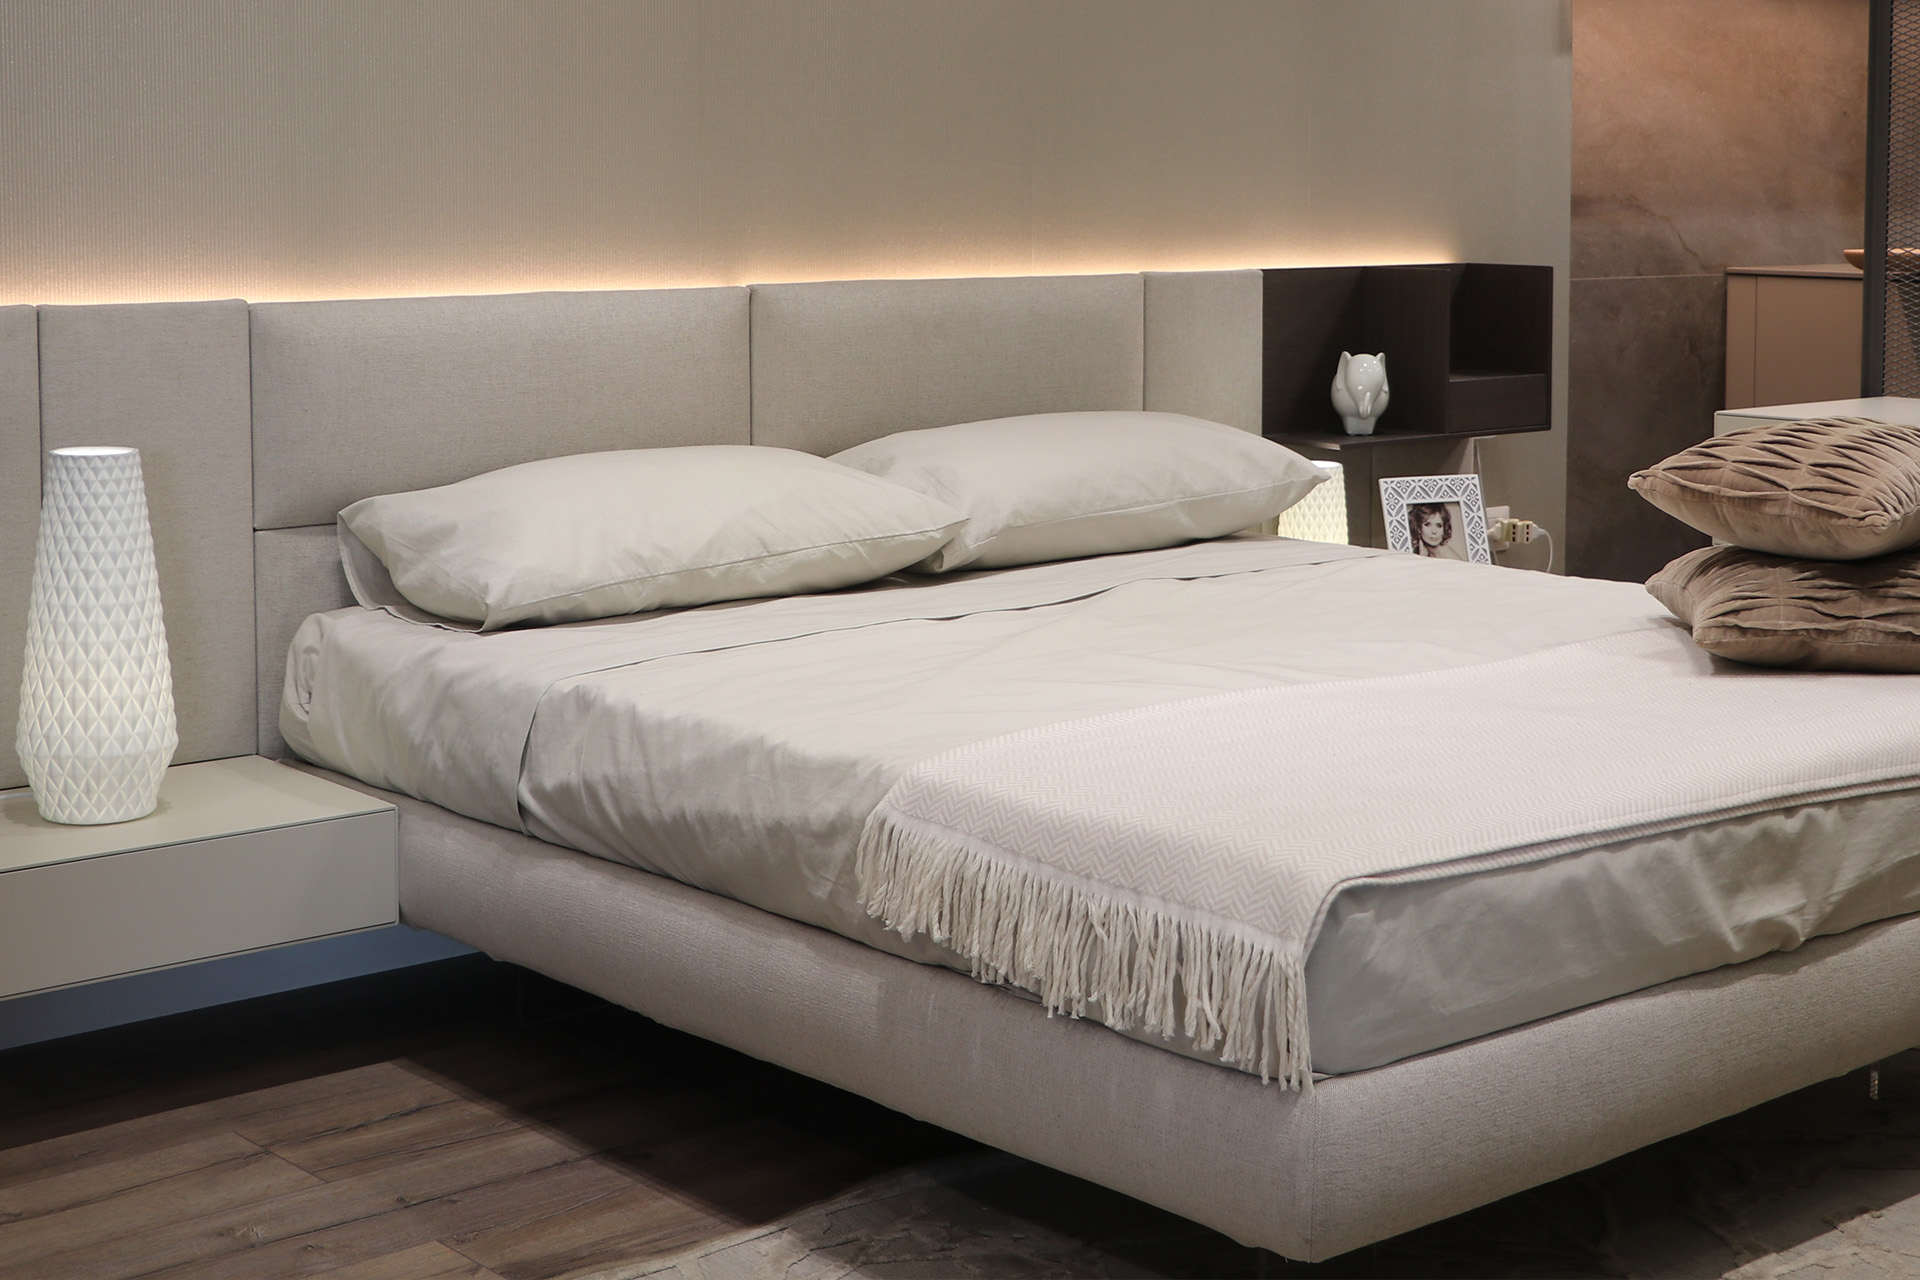 Showroom zona notte con un letto bianco visto in prospettiva situato in una stanza da letto